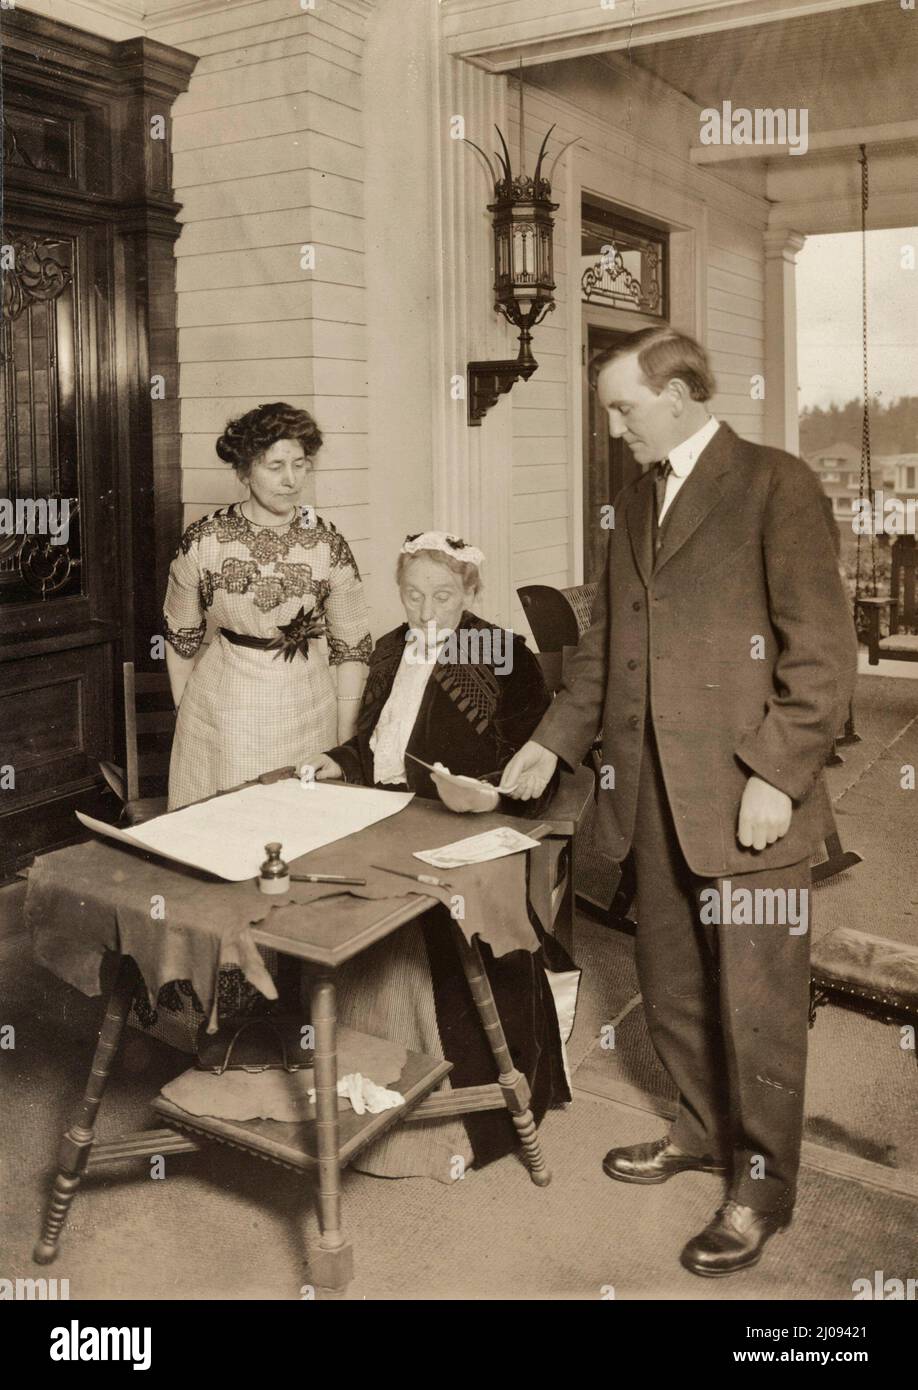 Abigail Scott Duniway unterschrieb die erste Proklamation für gleiches Wahlrecht, die jemals von einer Frau verkündet wurde. Der Gouverneur von Oregon, Oswald West, der die Proklamation unterzeichnet hatte, wird mit Blick auf die Proklamation gezeigt, und die amtierende Präsidentin Dr. Viola M. Coe steht in der Nähe - November 1912 Stockfoto